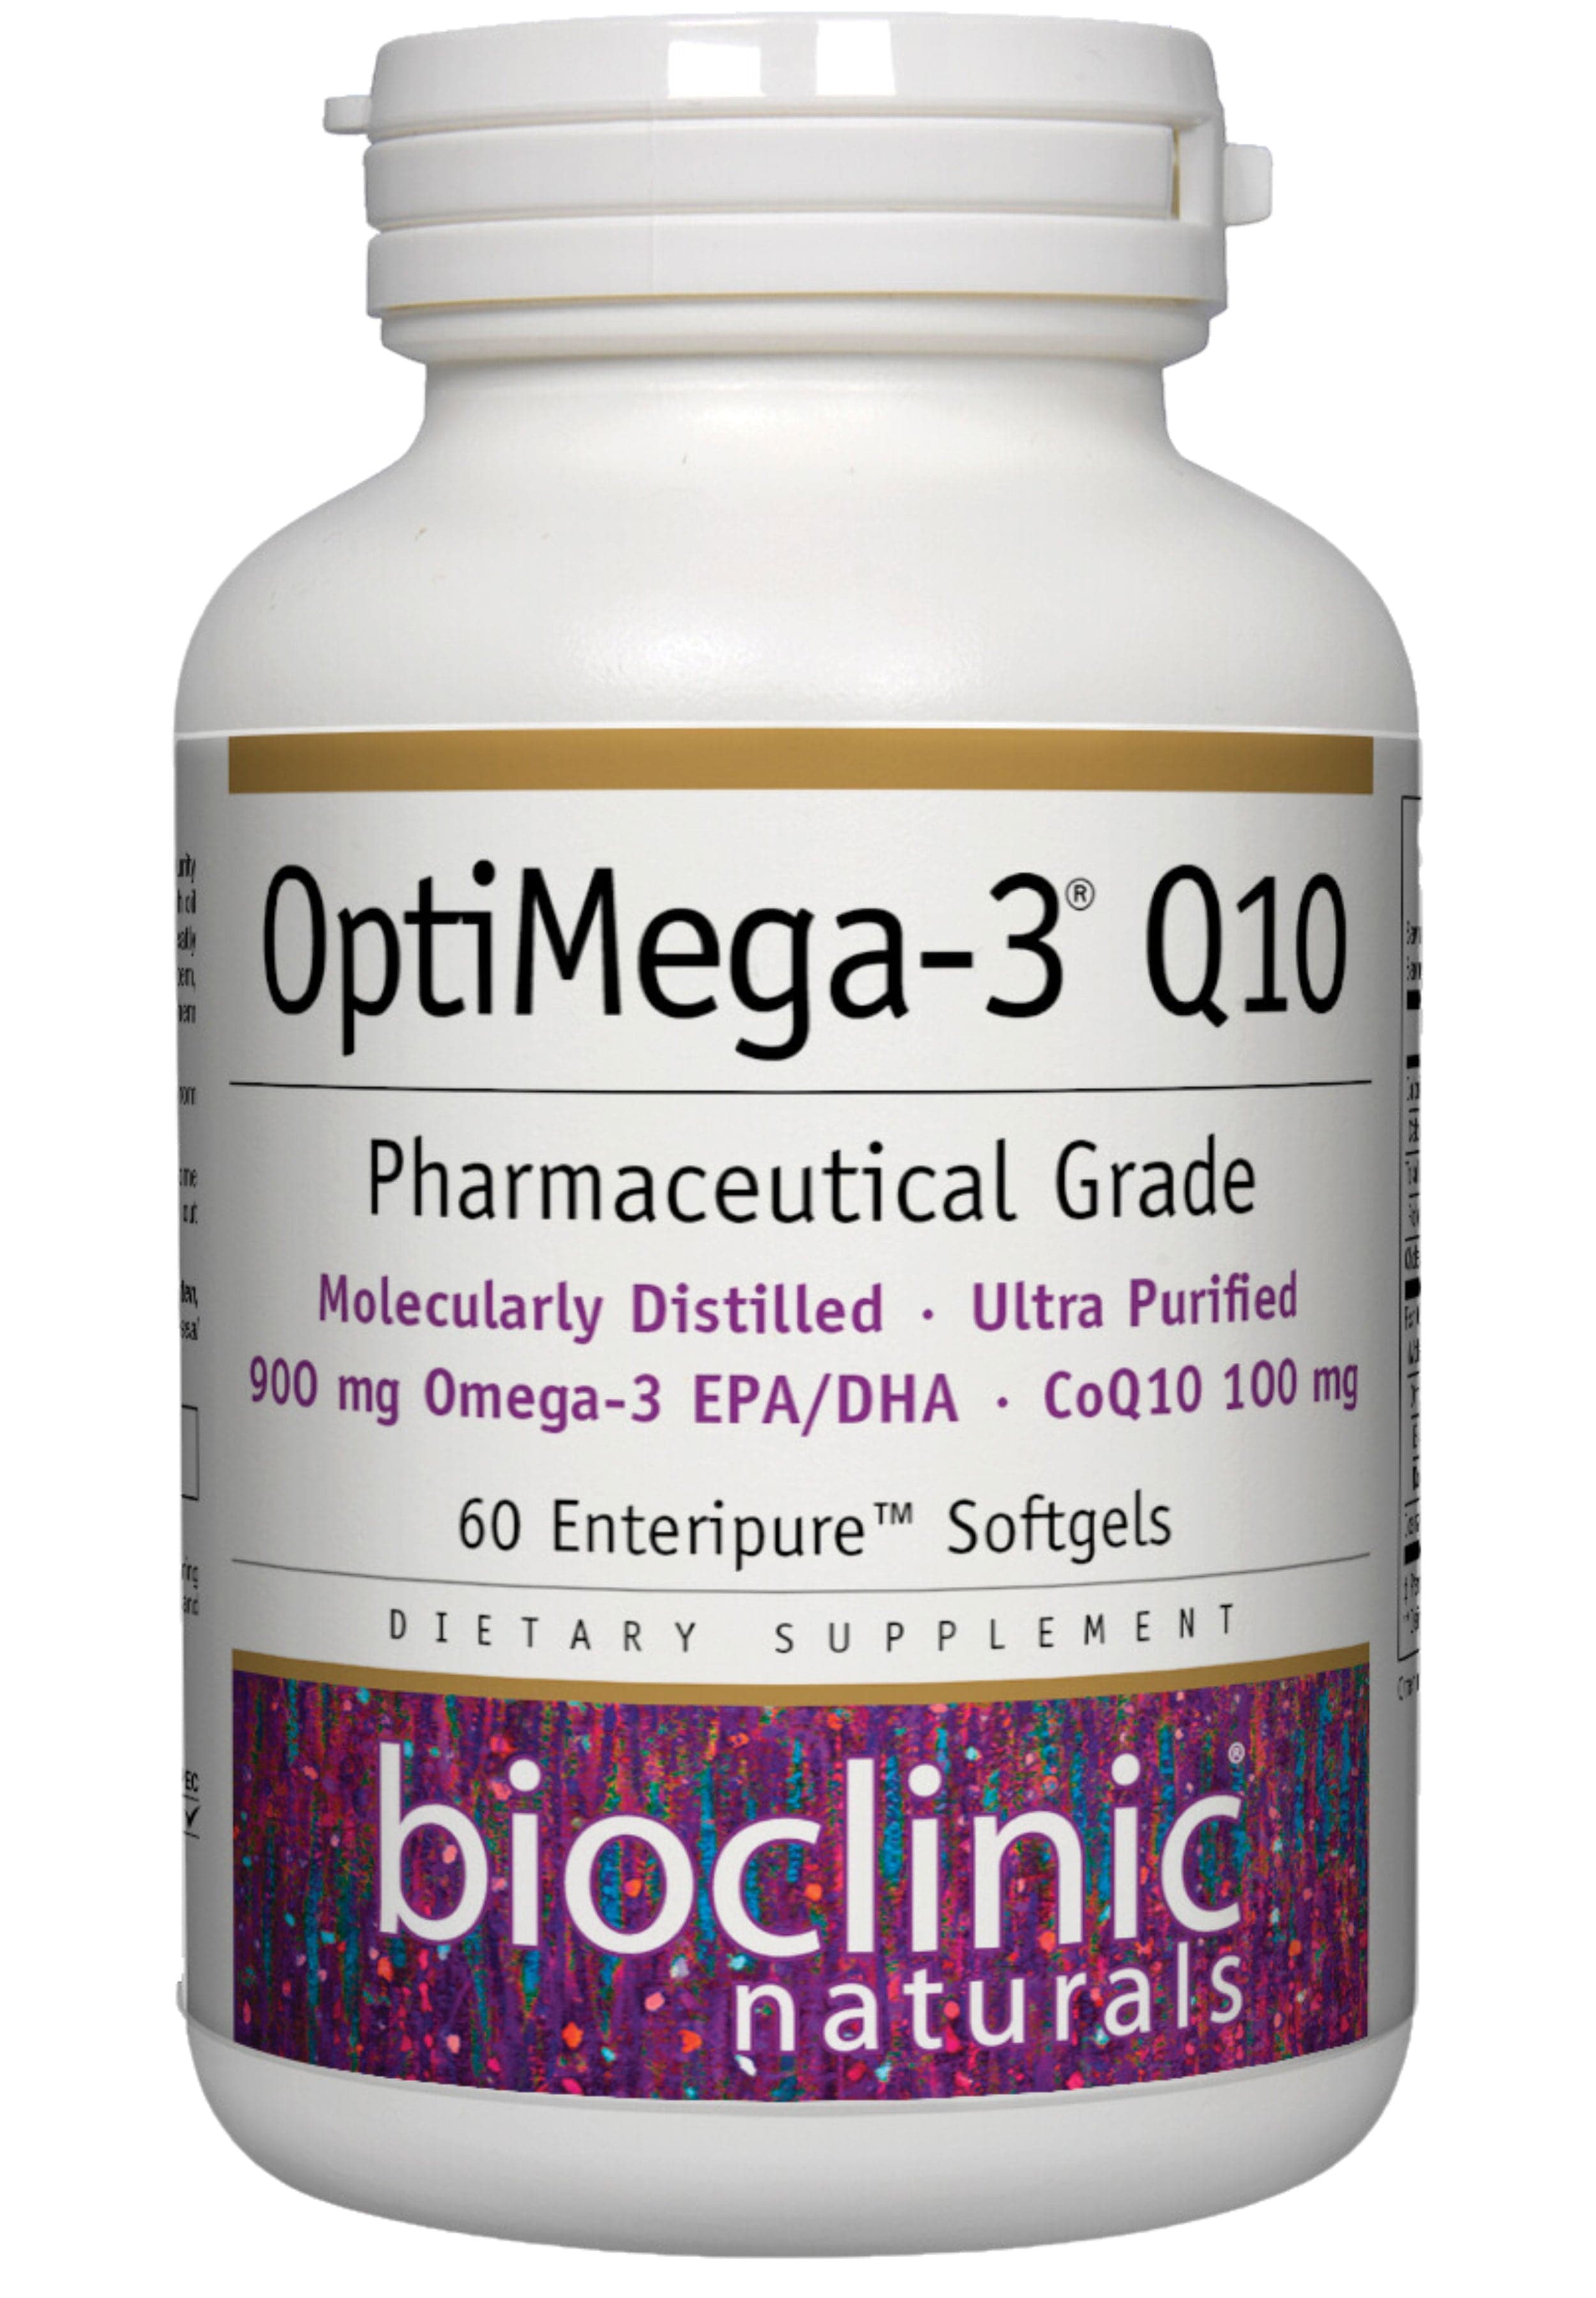 Bioclinic Naturals OptiMega-3 Q10